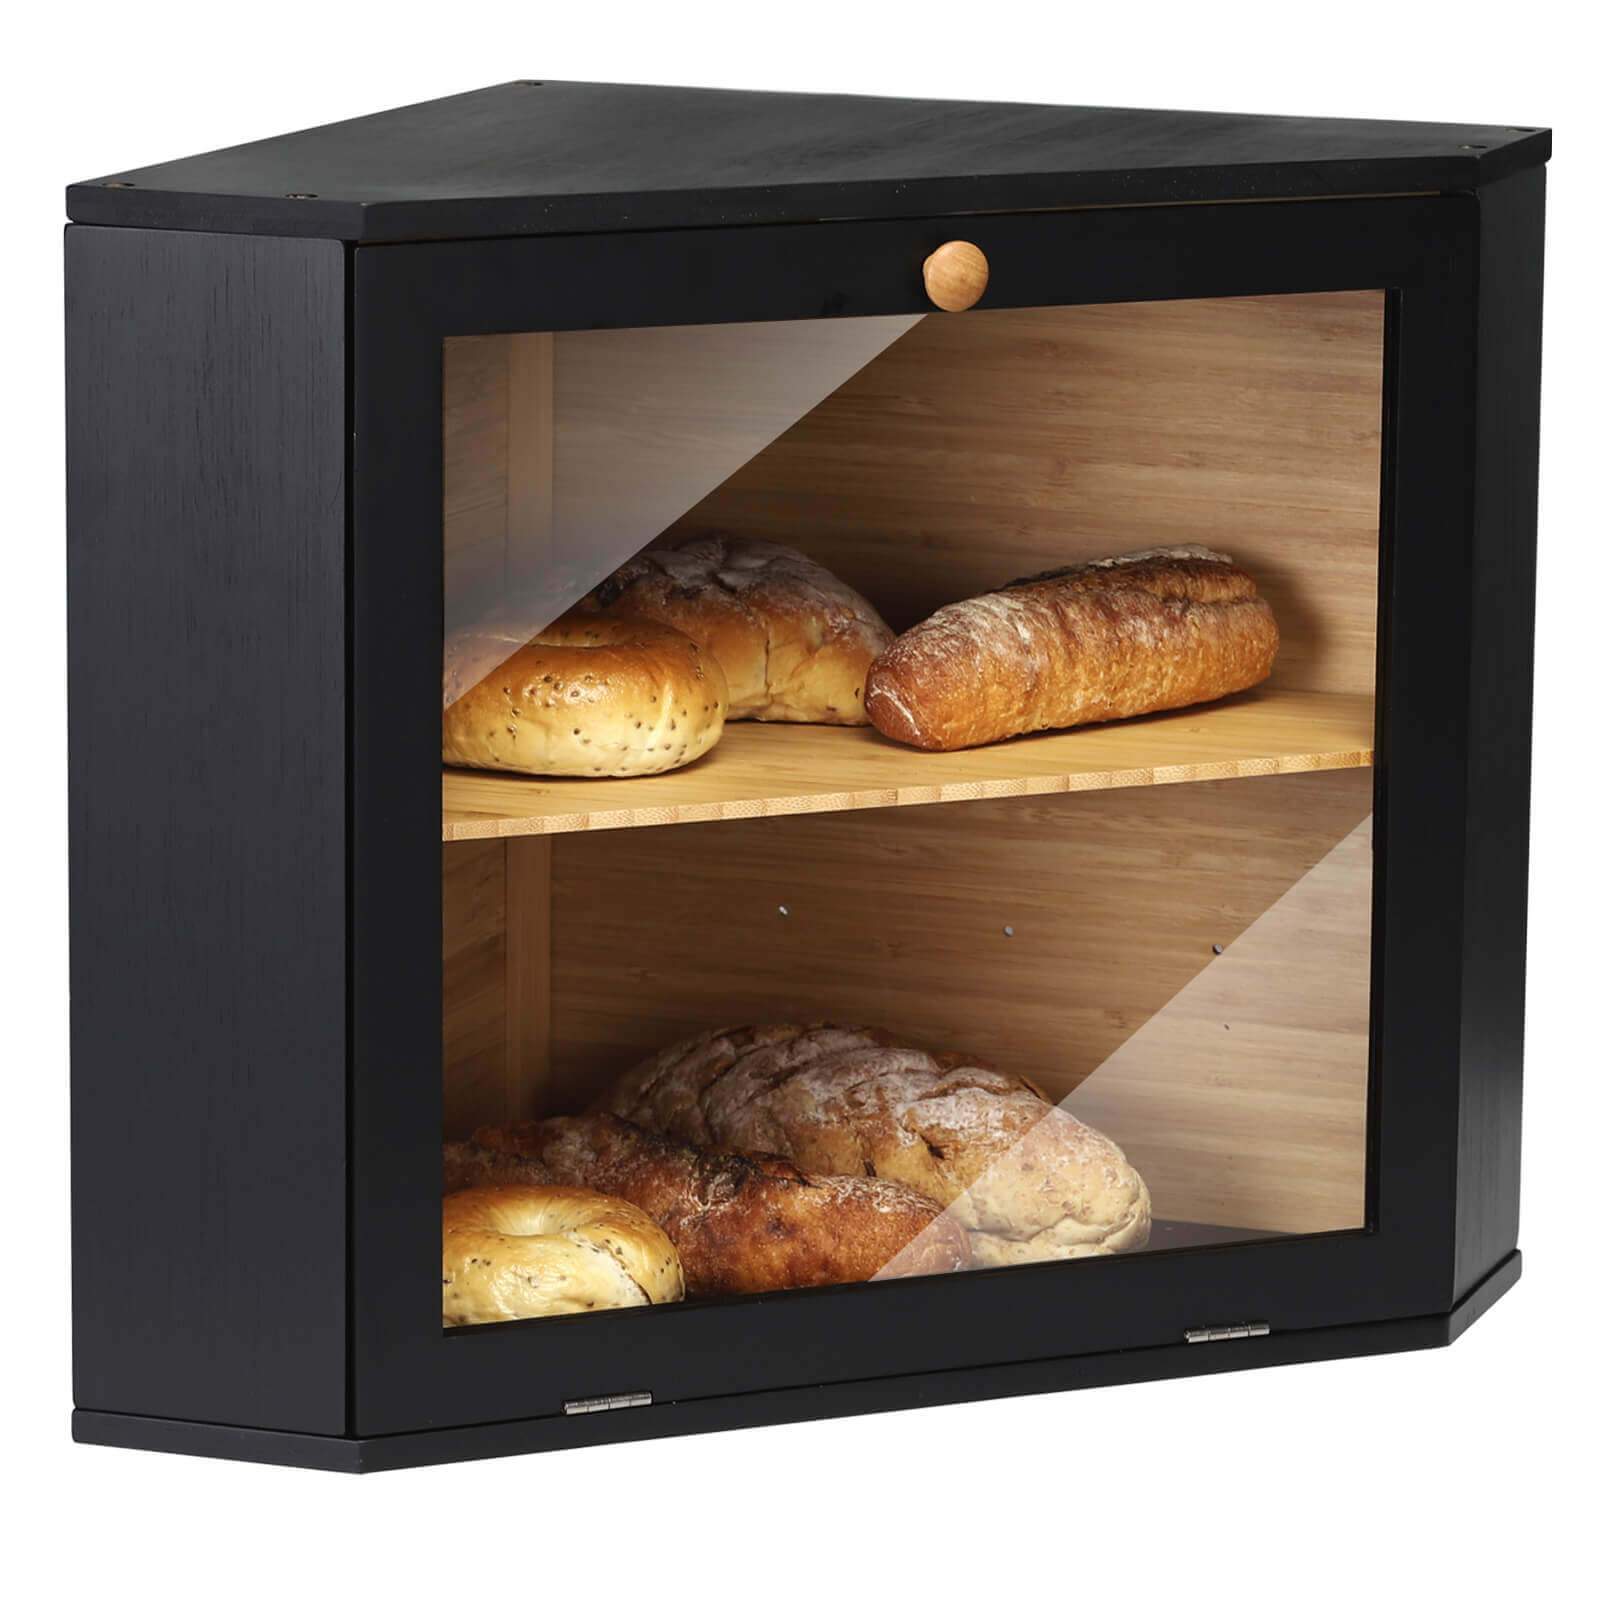 Bread Storage Bin Corner Bread Holder Bamboo Bread Organizer Countertop  Bread Container